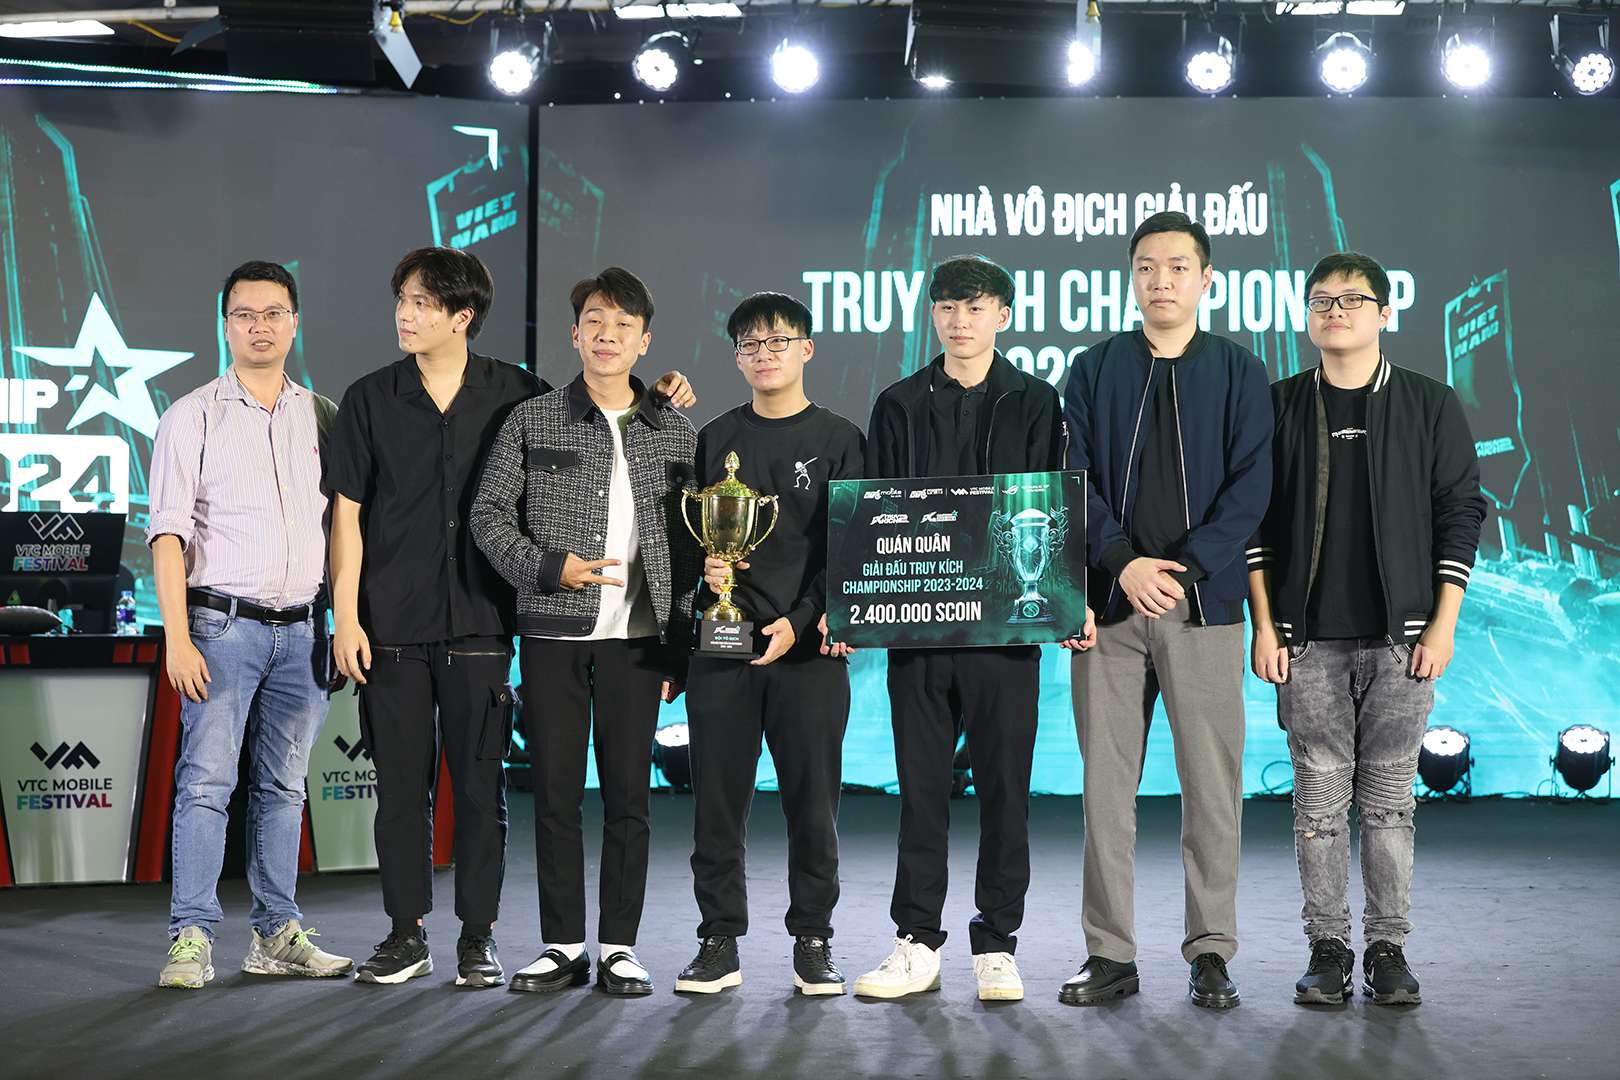 Đội Người Cao Tuổi đã giành chức vô địch trong trận chung kết của Truy Kích 2.